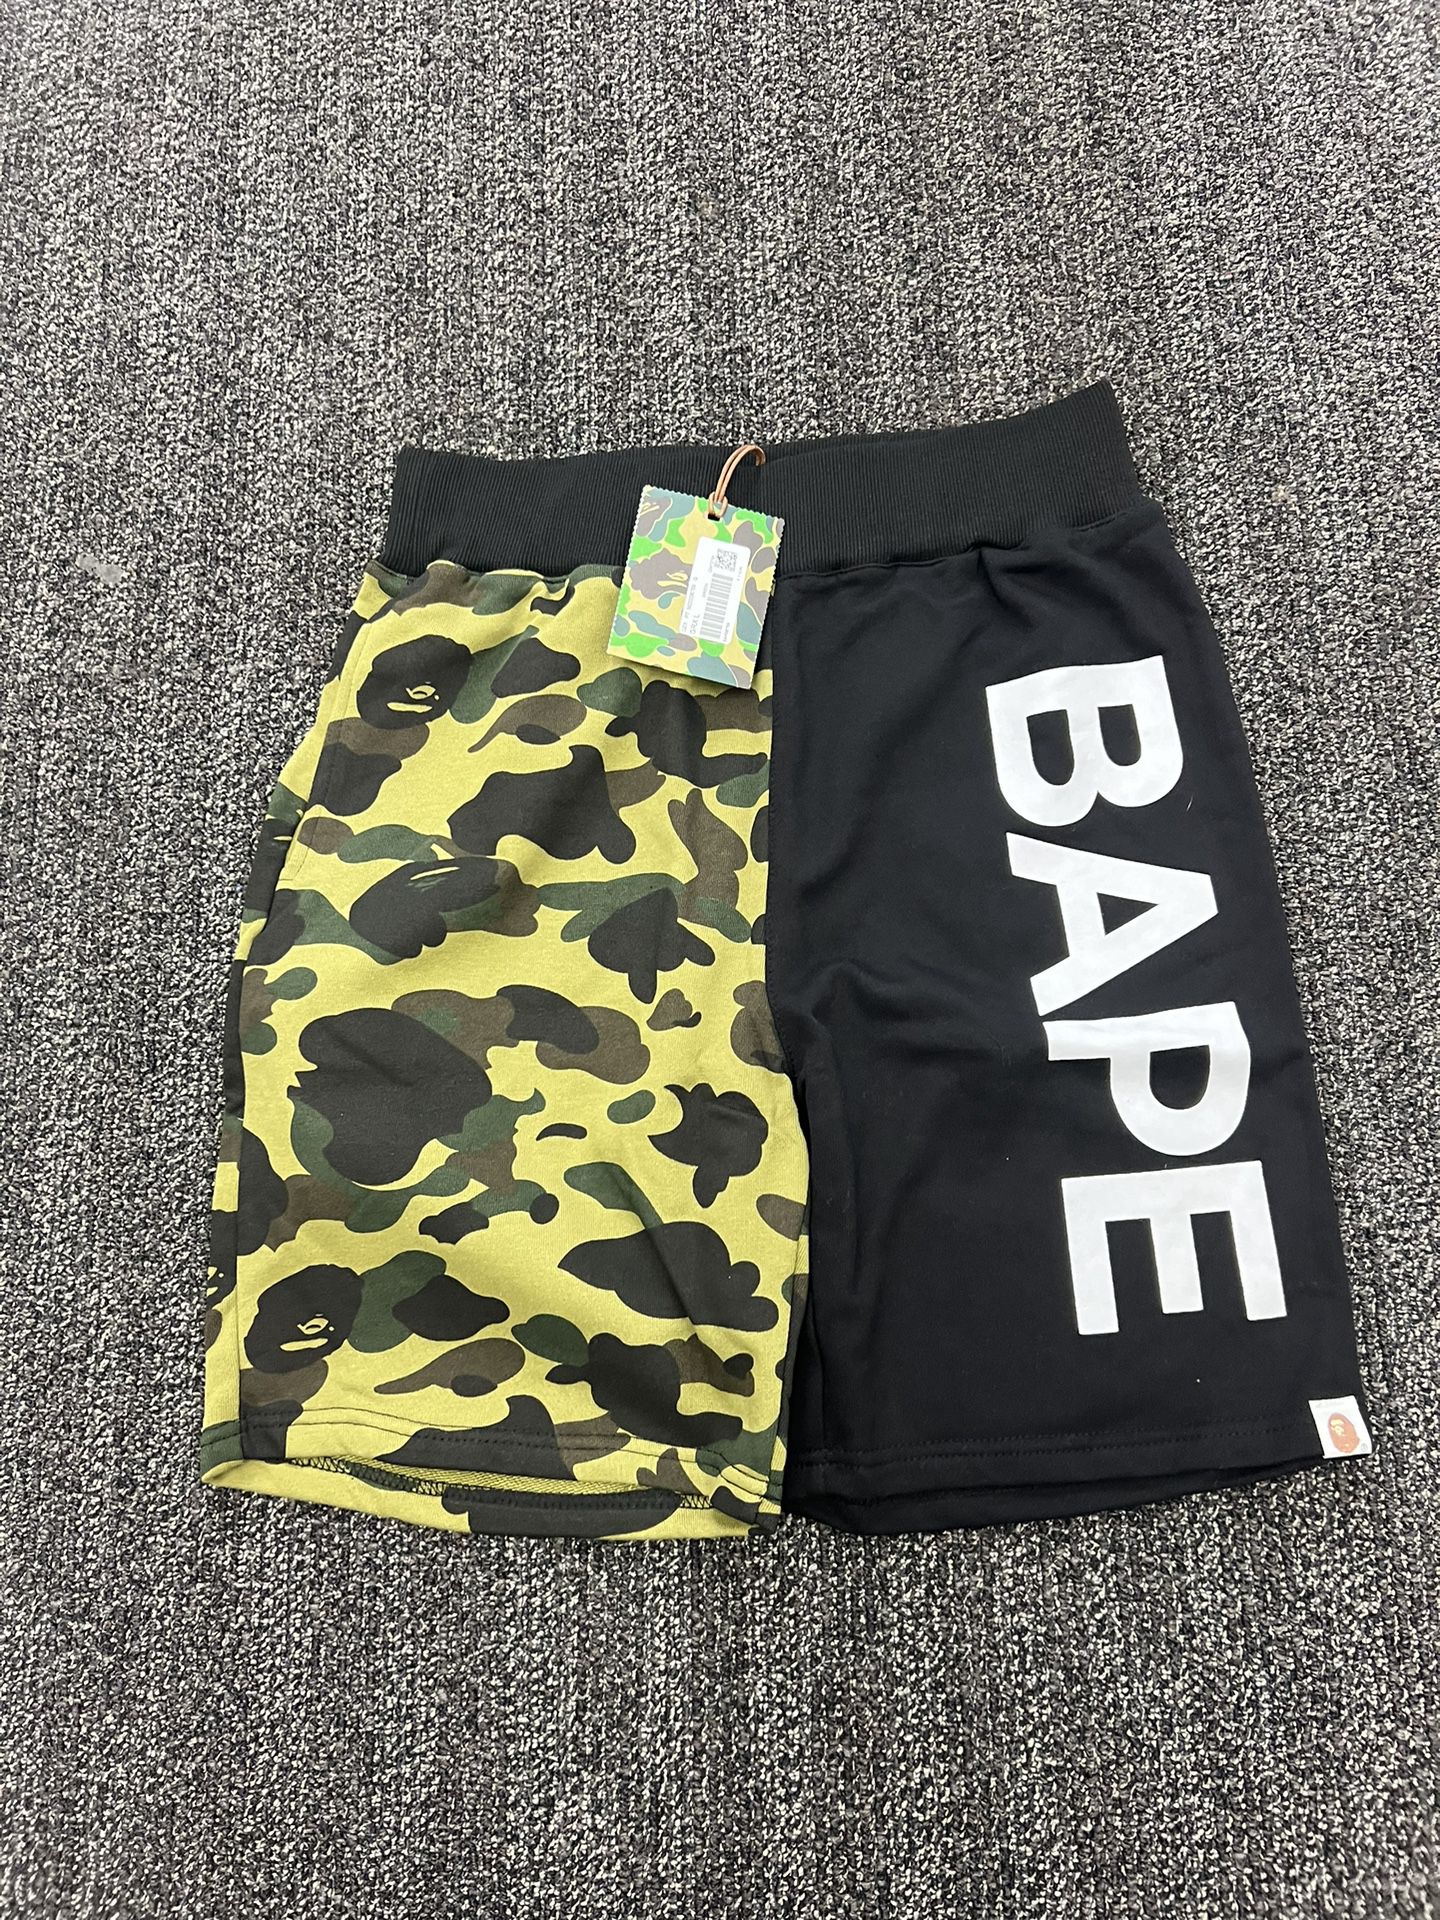 Bape Shorts